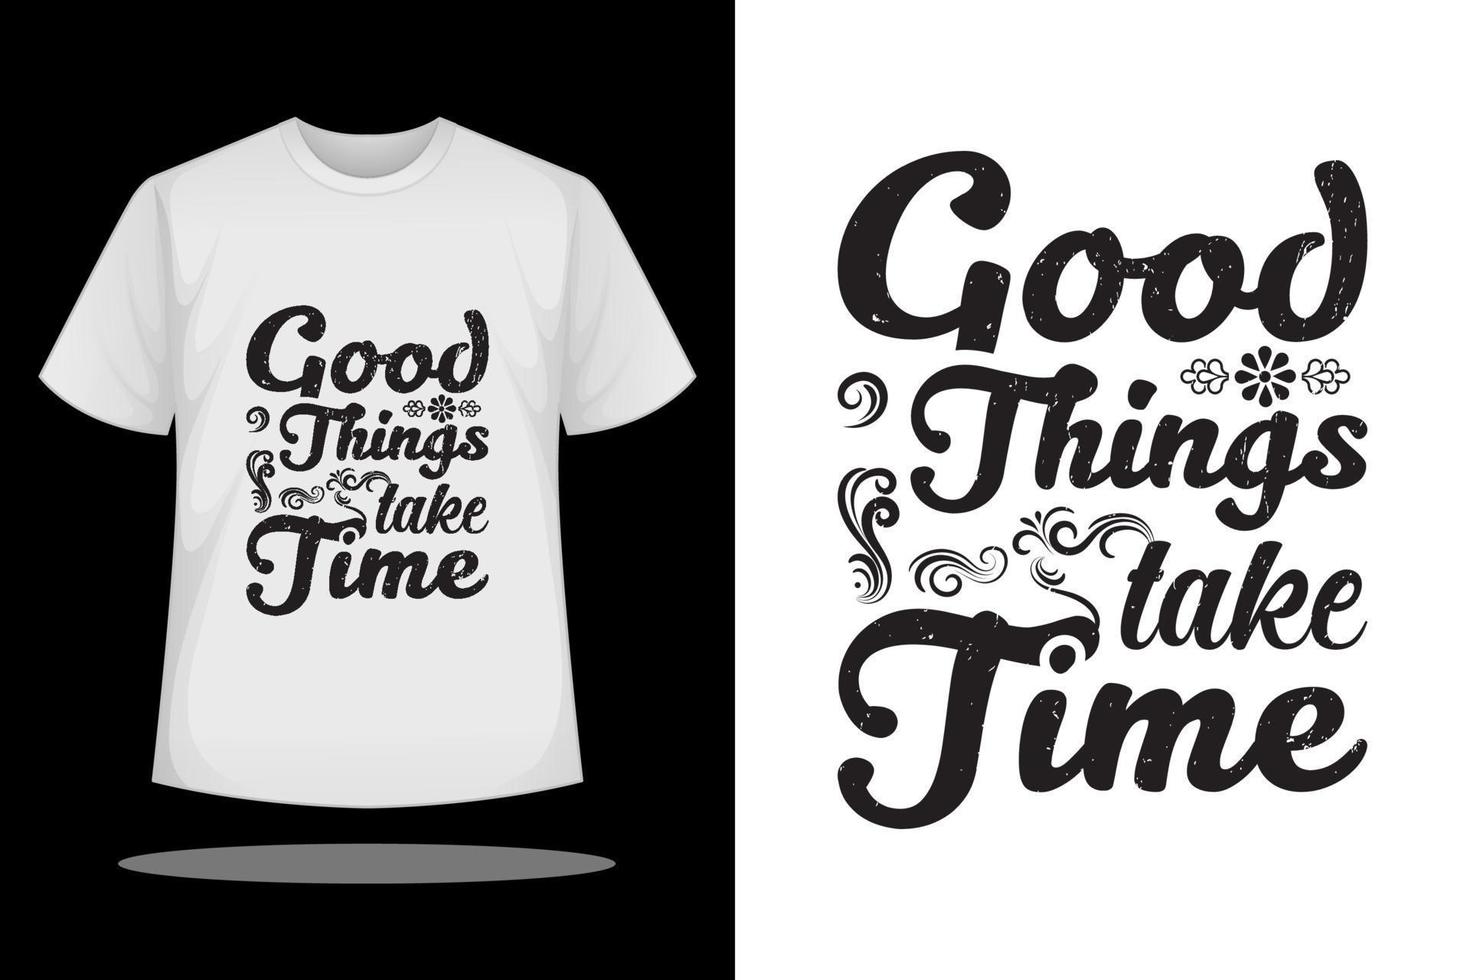 conception de t-shirt, les bonnes choses prennent du temps citation inspirante et vecteur de t-shirt graphique de slogan